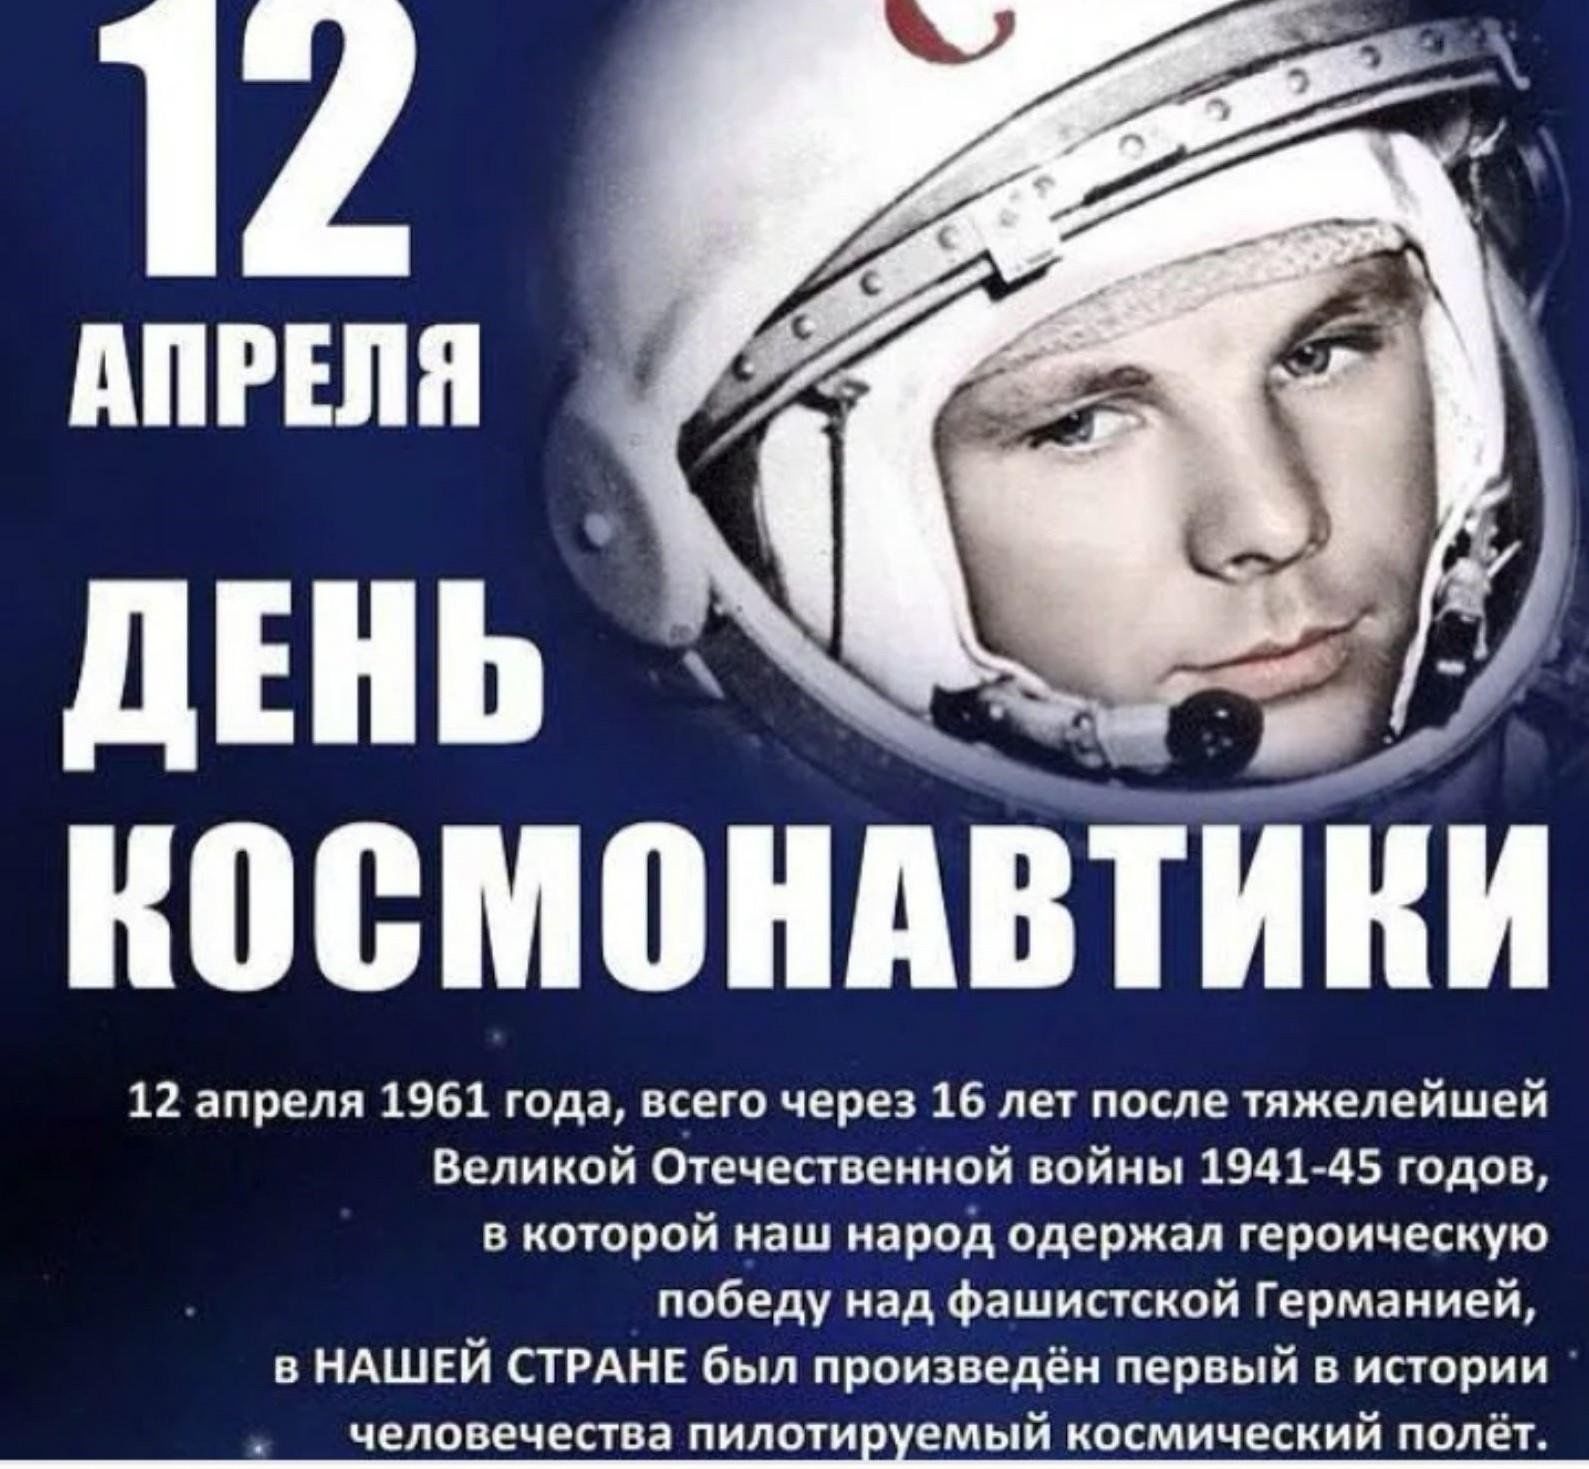 12 апреля праздник год. 12 Апреля день космонавтики. День Космонавта. СССРТС днем космонавтики. 12 - Апрель день косонавтики.